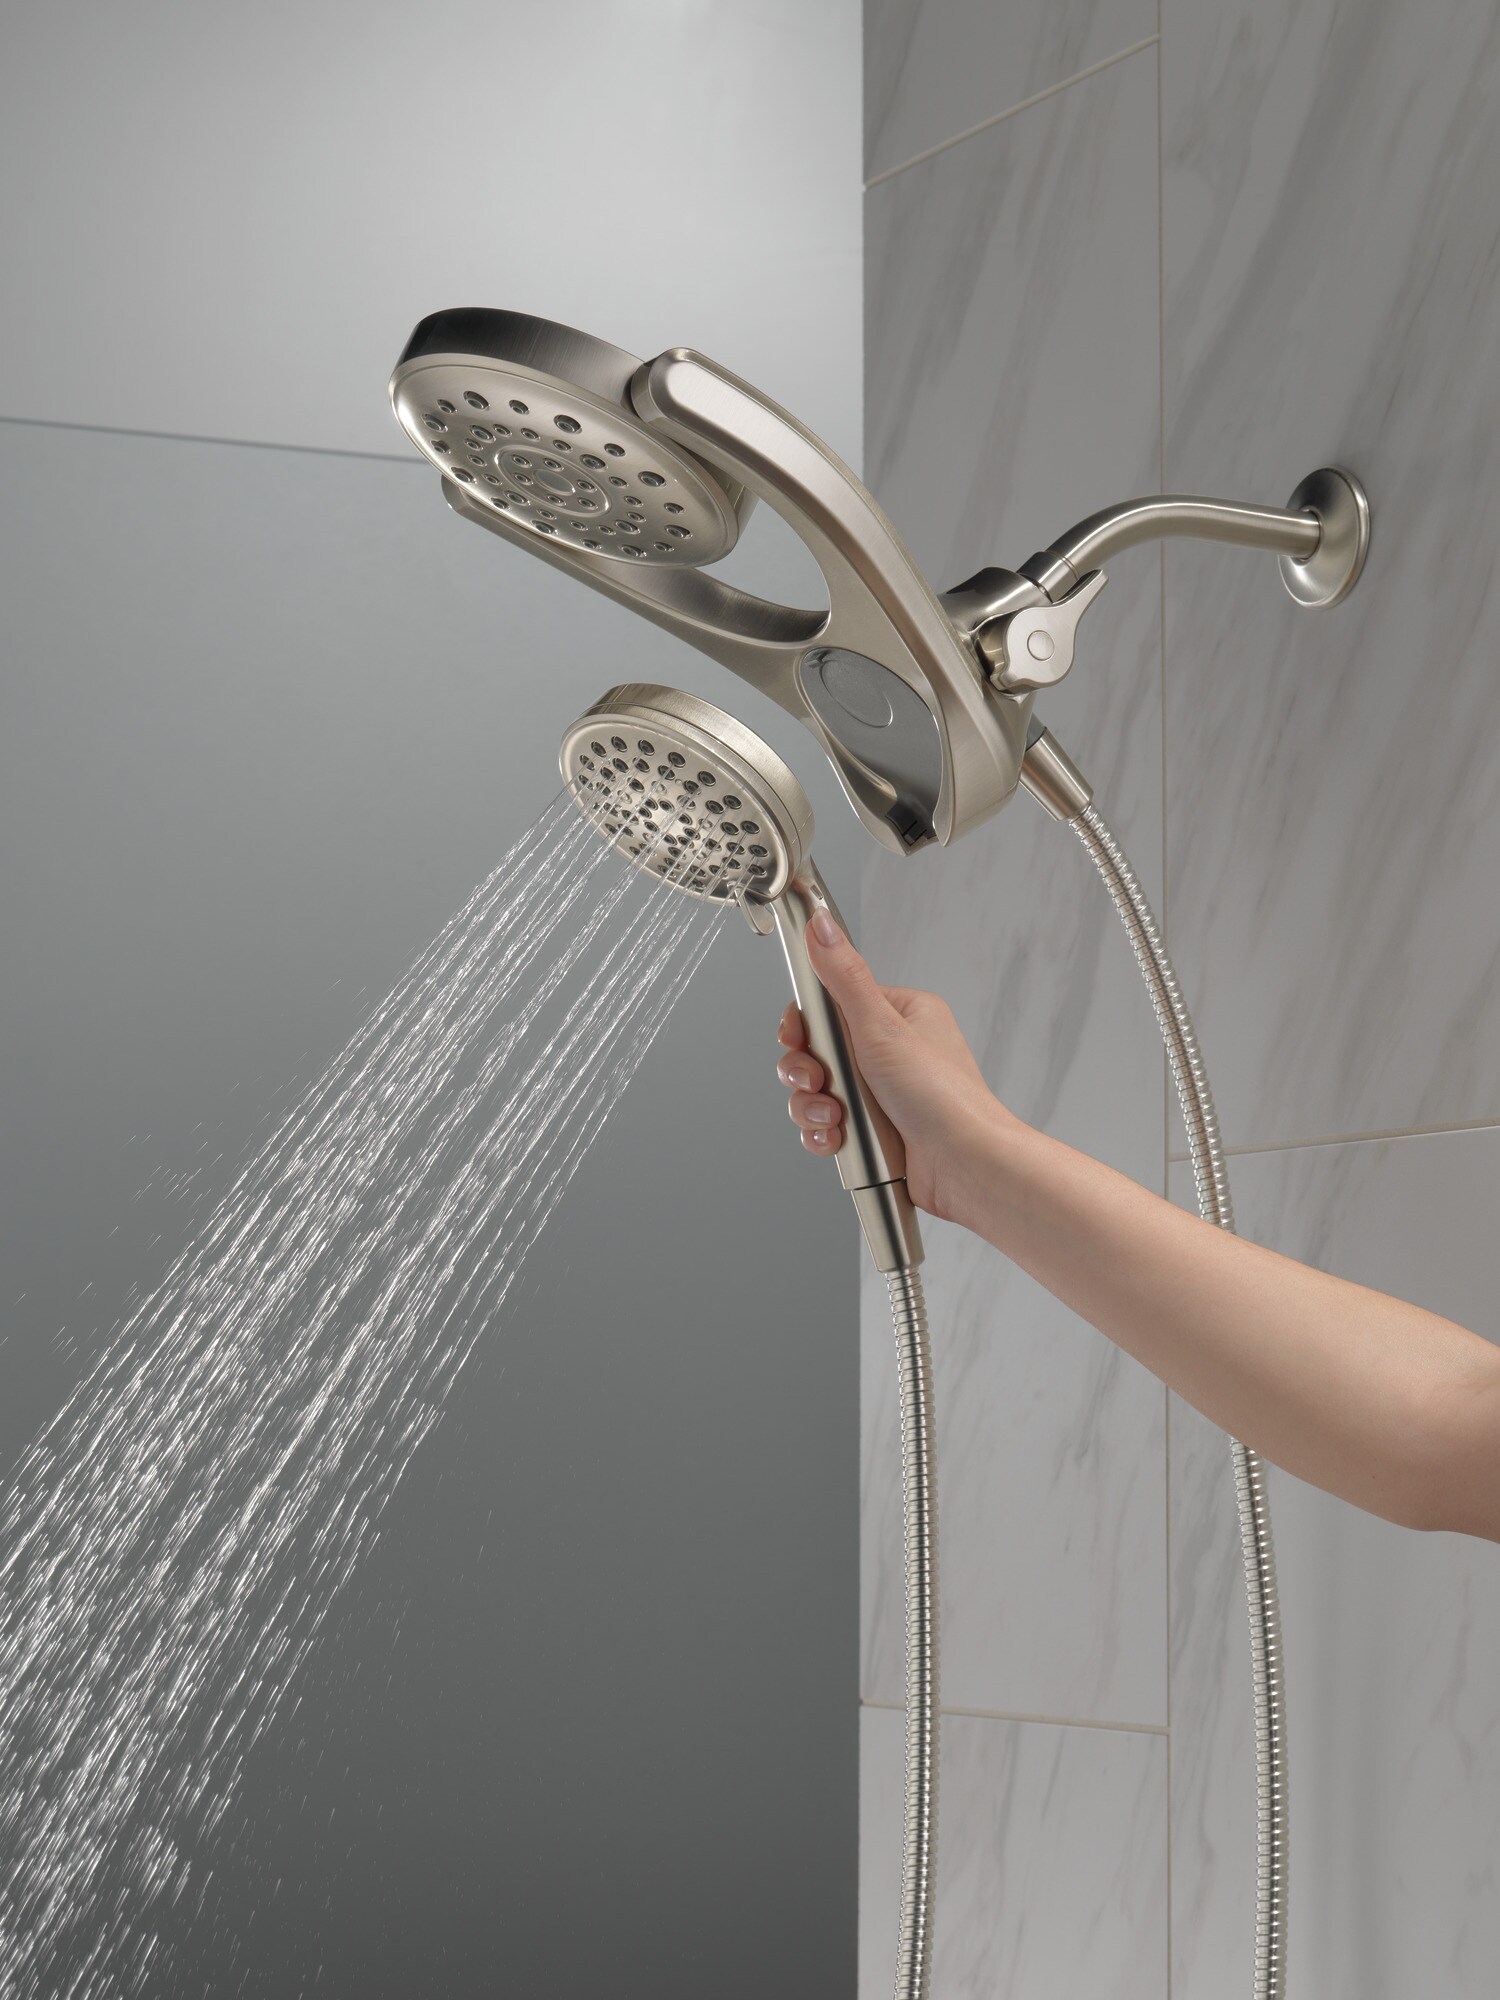 Hose With Pause Shower Head Handheld 4-Spray SpotShield Brushed Nickel 72 in 